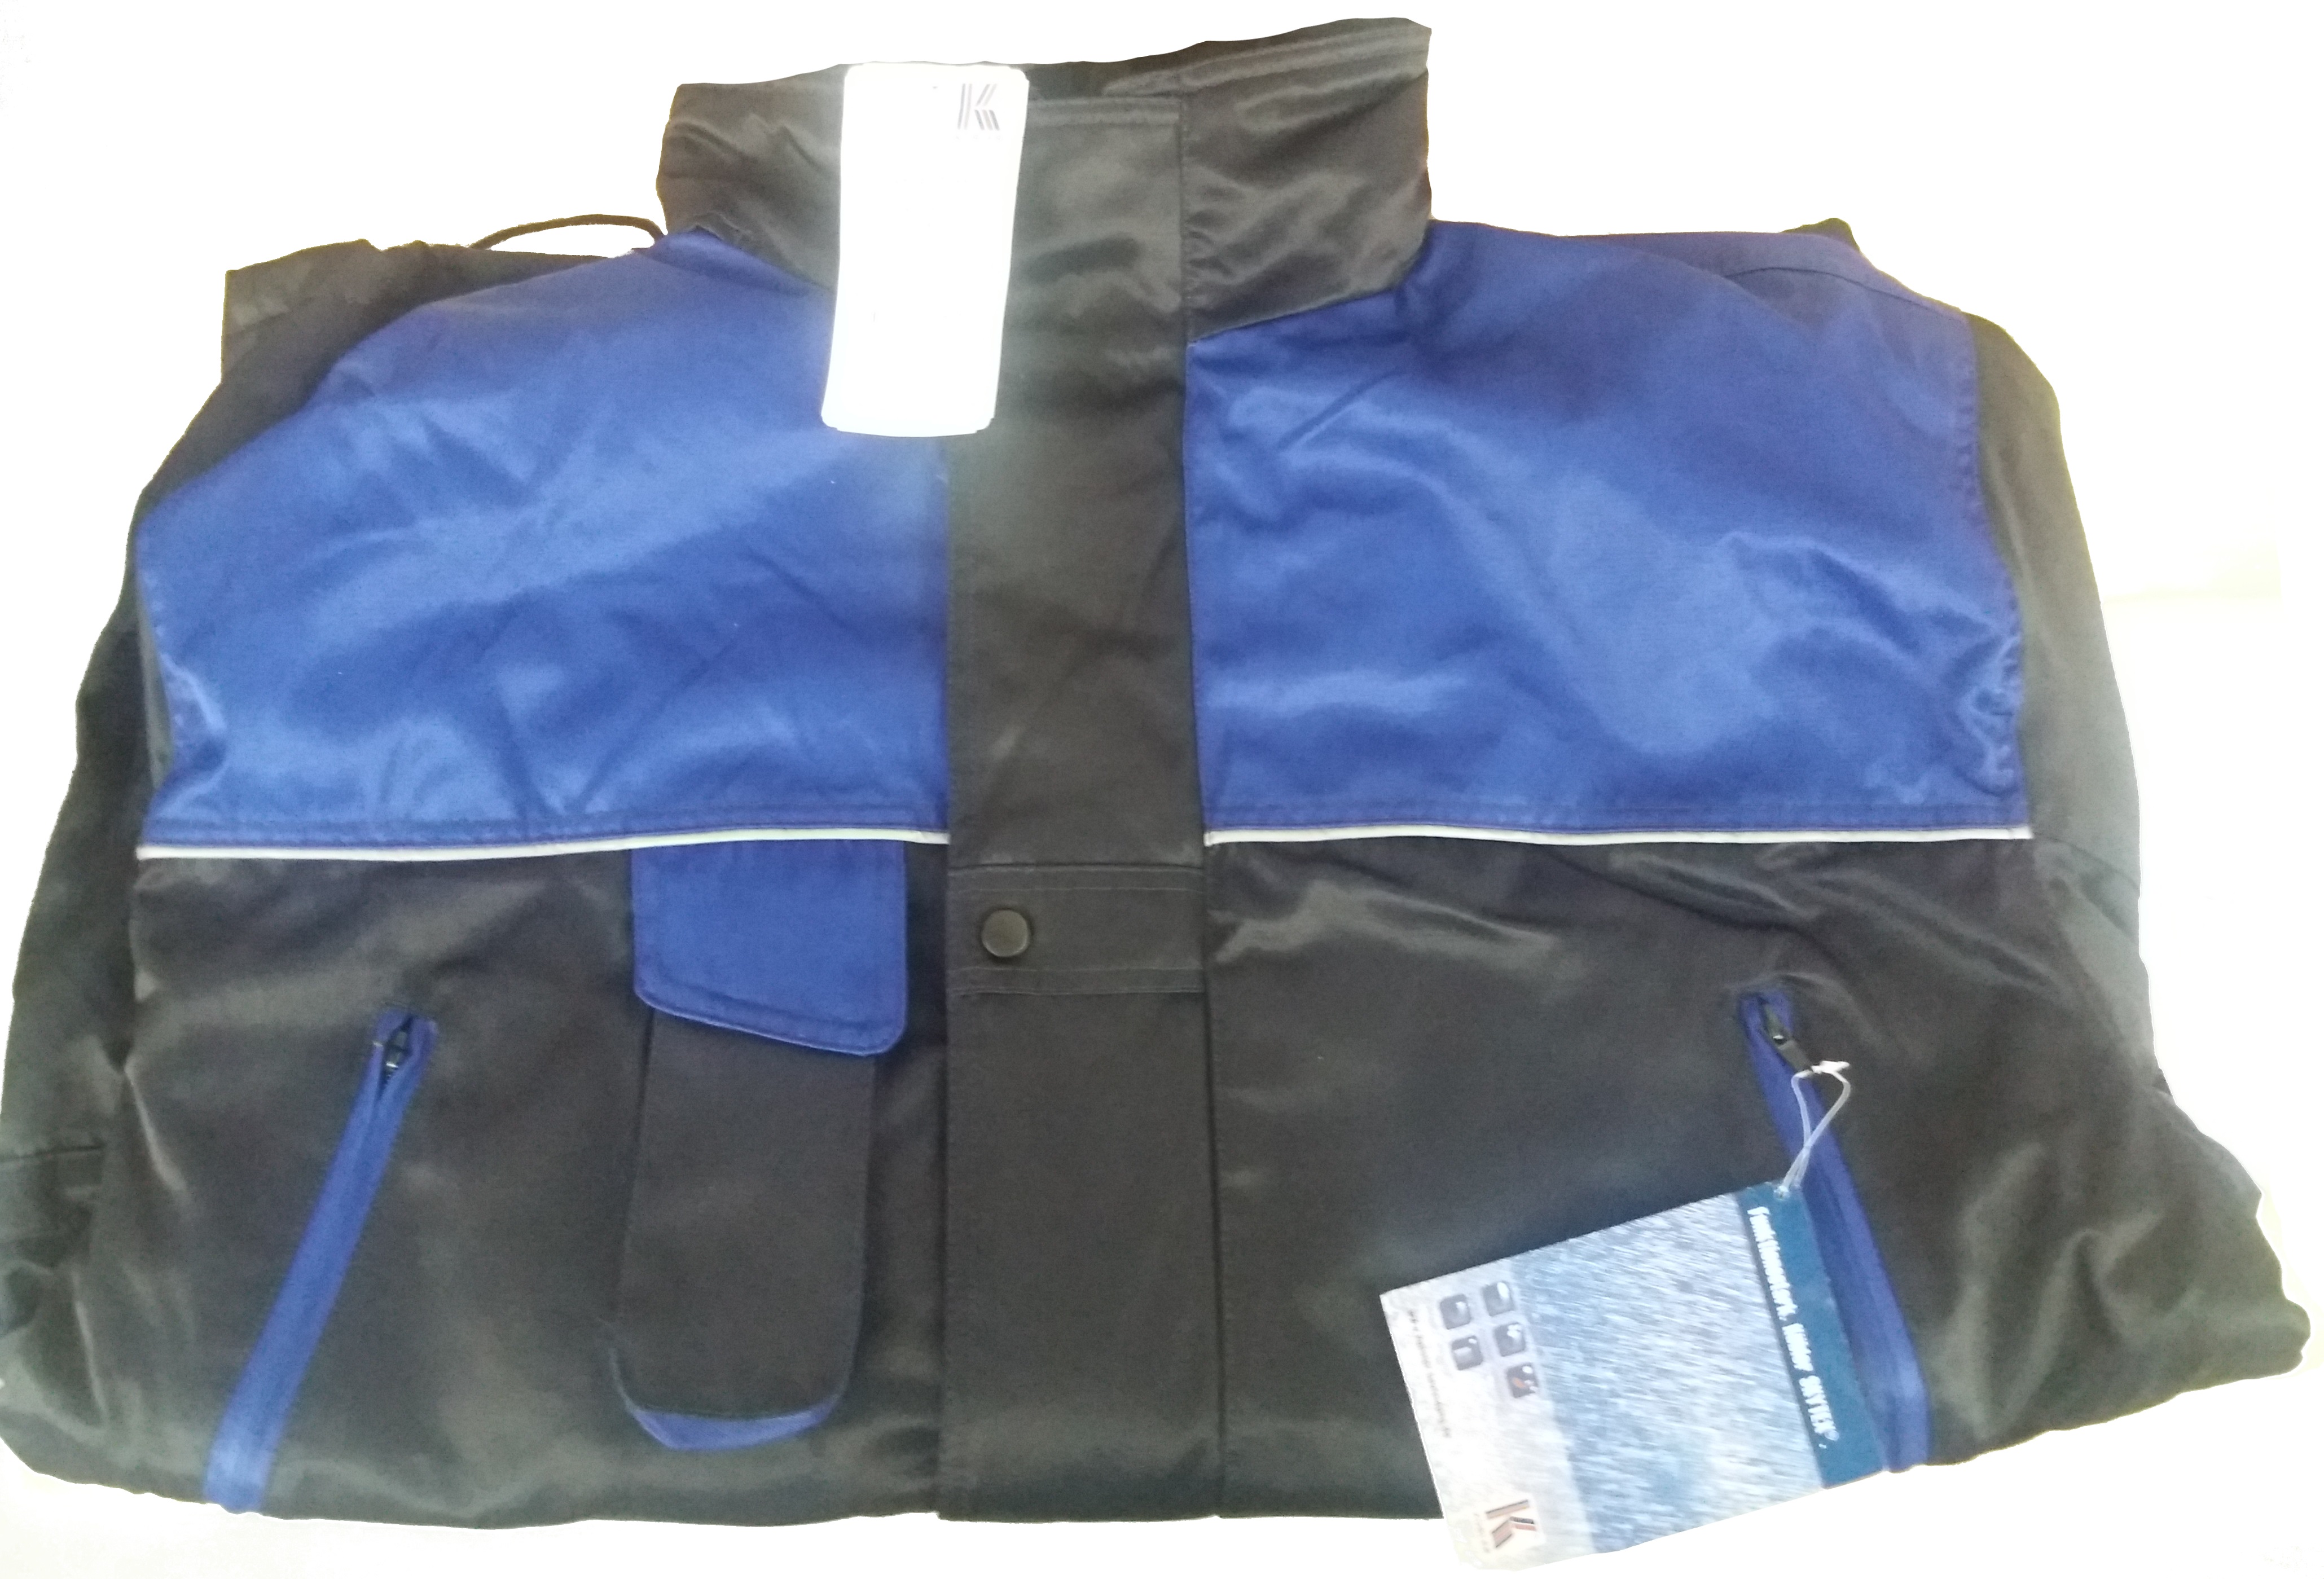 KÜBLER Jacke Bundjacke Arbeitsjacke Berufsjacke Schutzjacke Arbeitskleidung Berufskleidung SKYTEX Protect dunkelblau kornblau